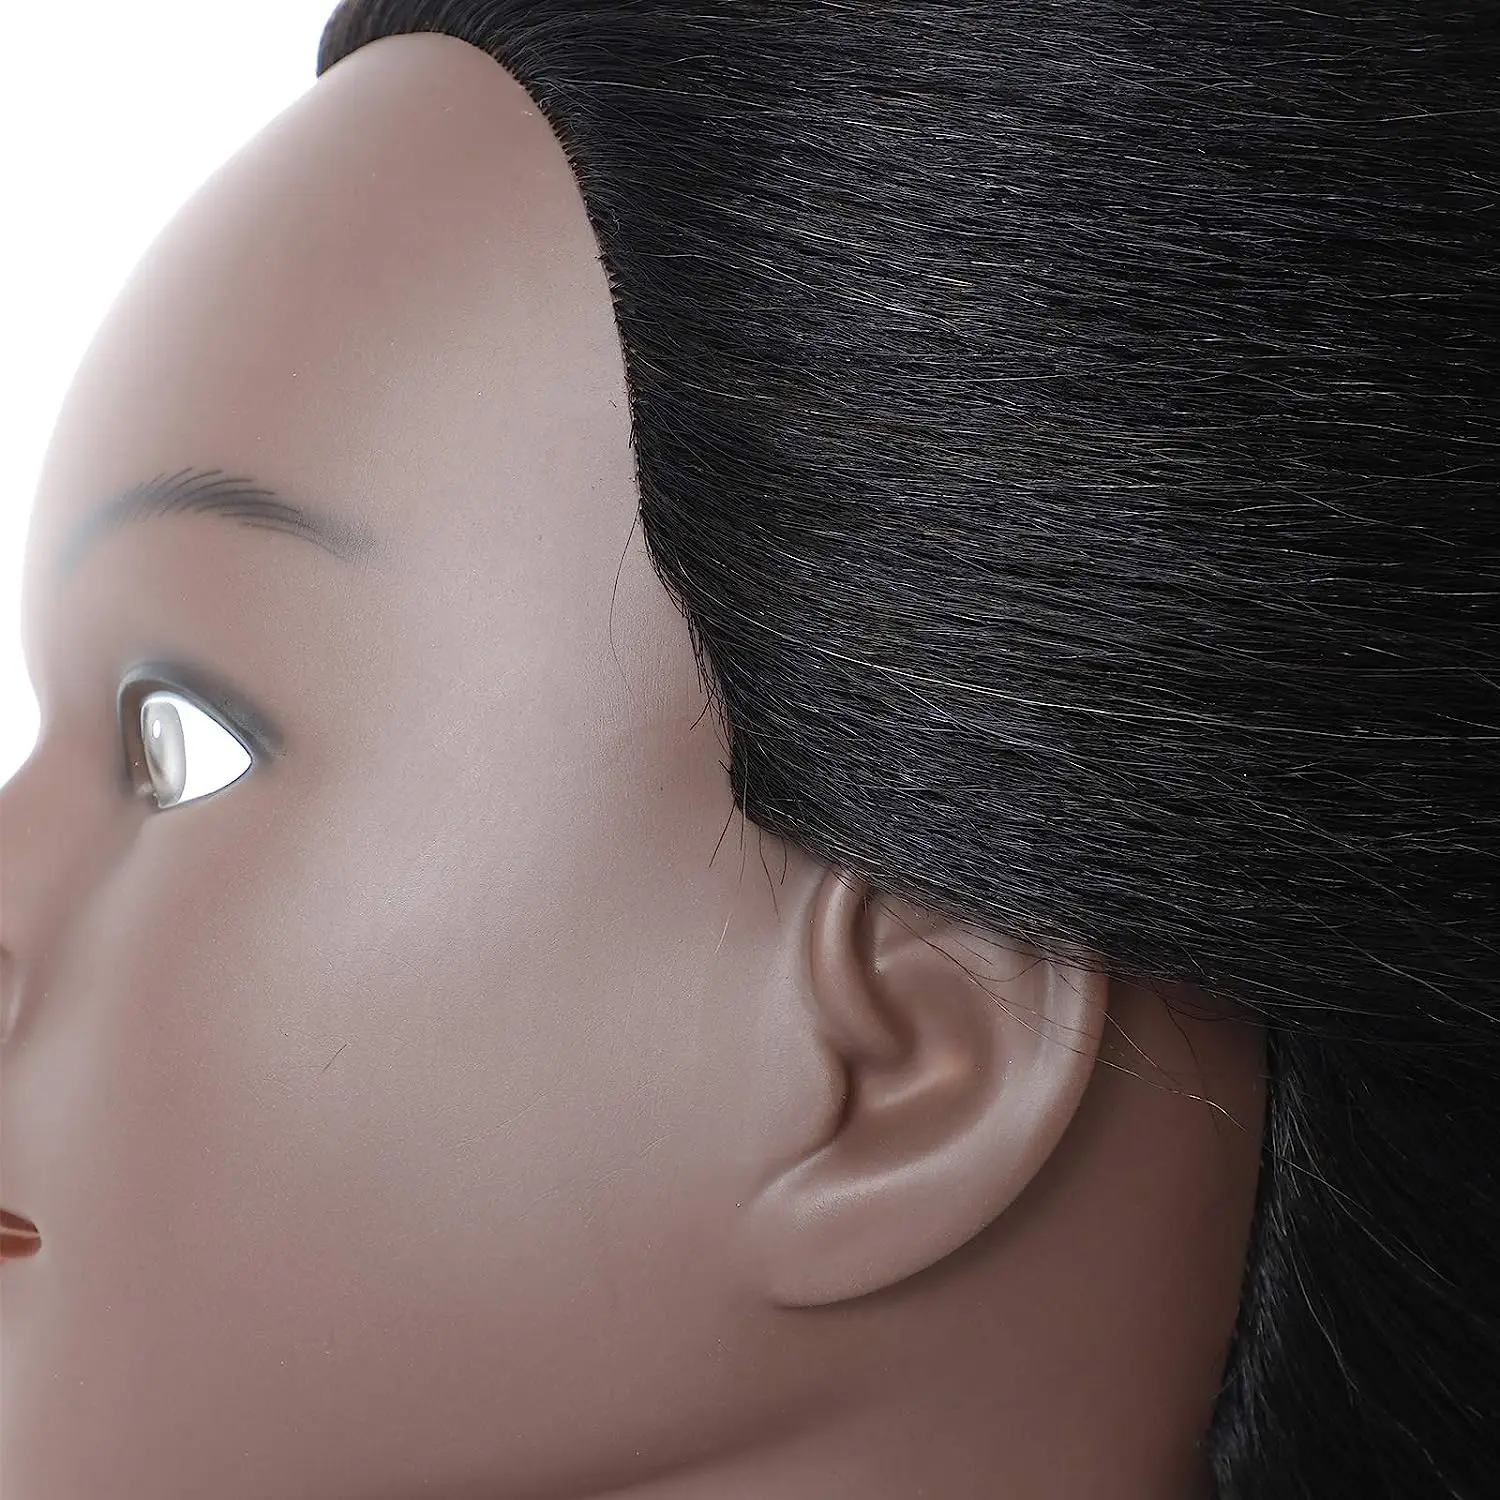 Главата на манекена със синтетична коса, тренировочная главата, косметологический манекен, стоп-моушън главата за фризьорски салон практики, ширити, стайлинг на коса - 1